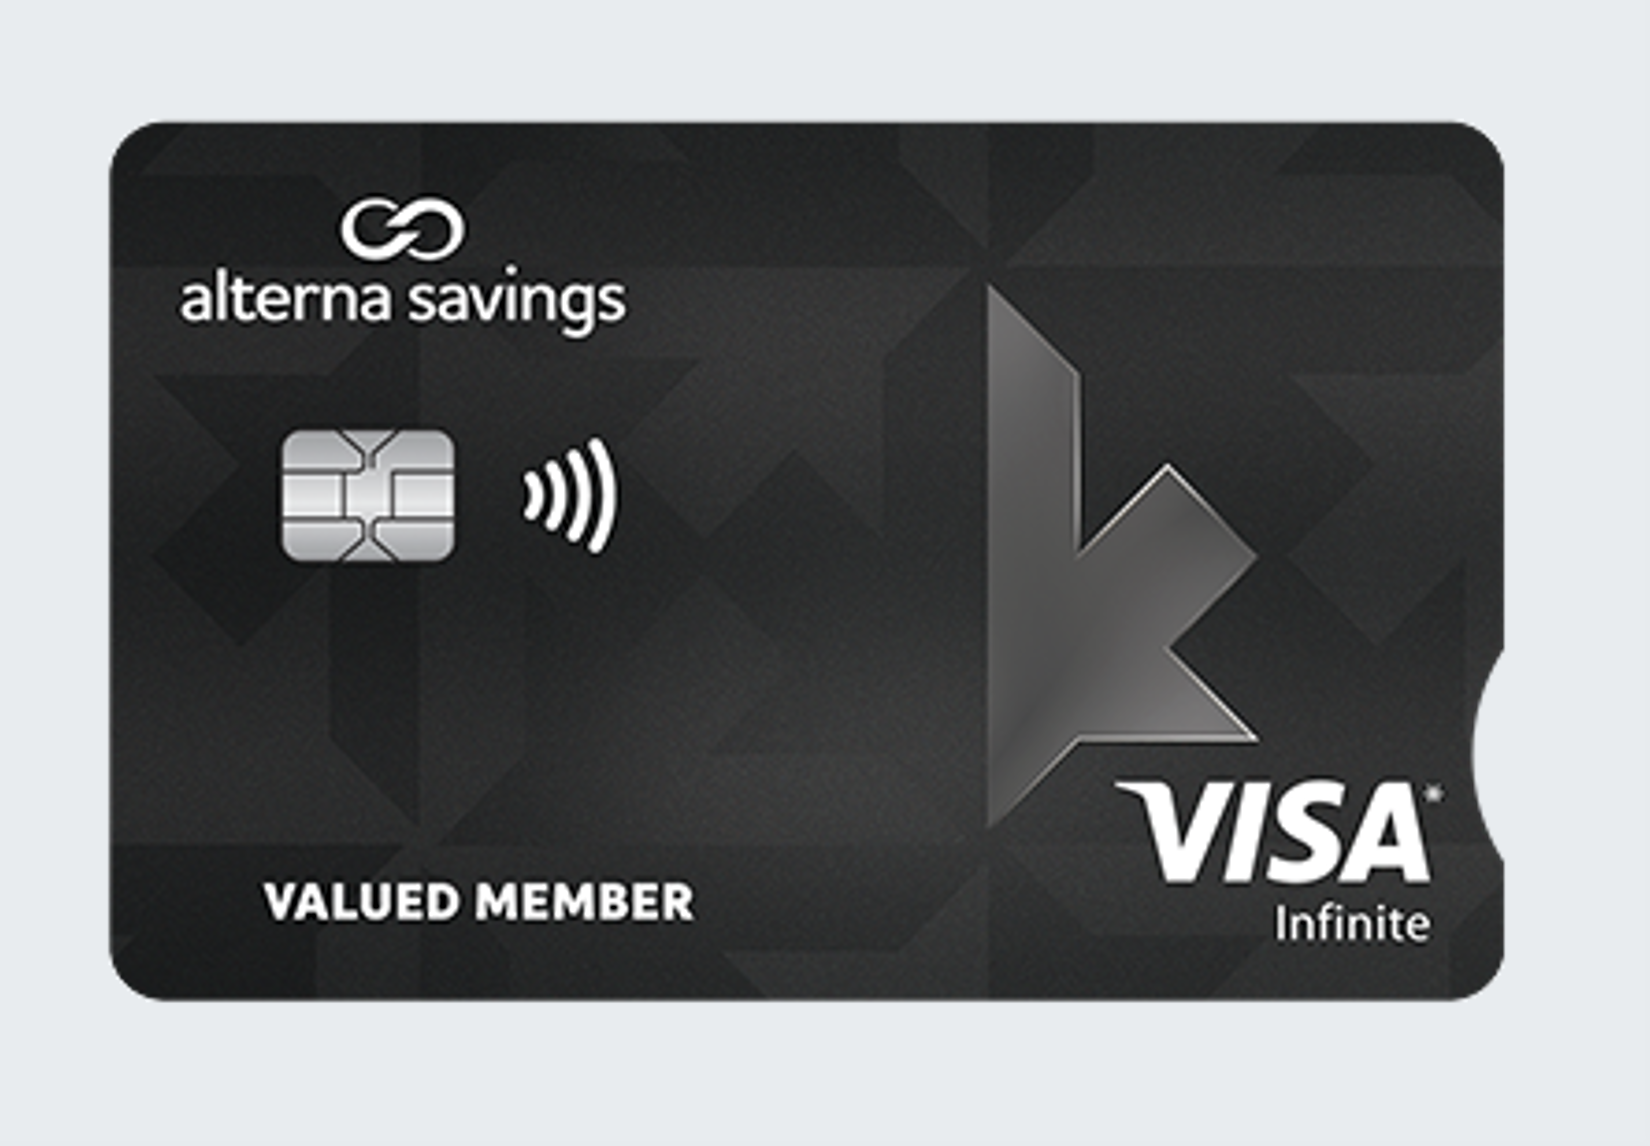 infinite credit card image